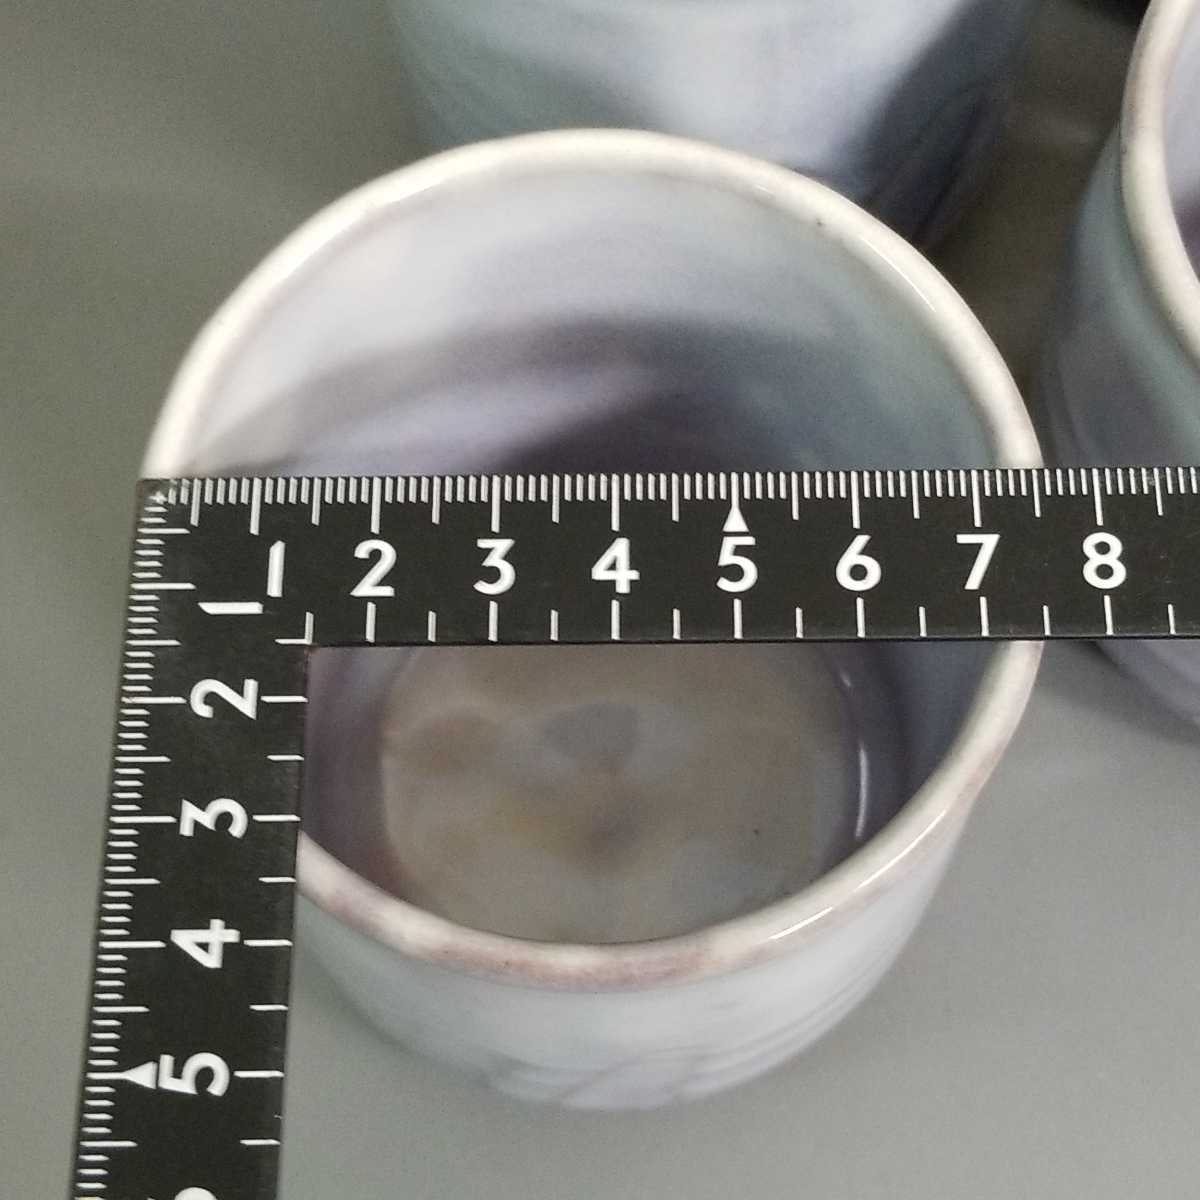 .86) Hagi . teacup [5 customer ] tea utensils teacup unused including in a package welcome 